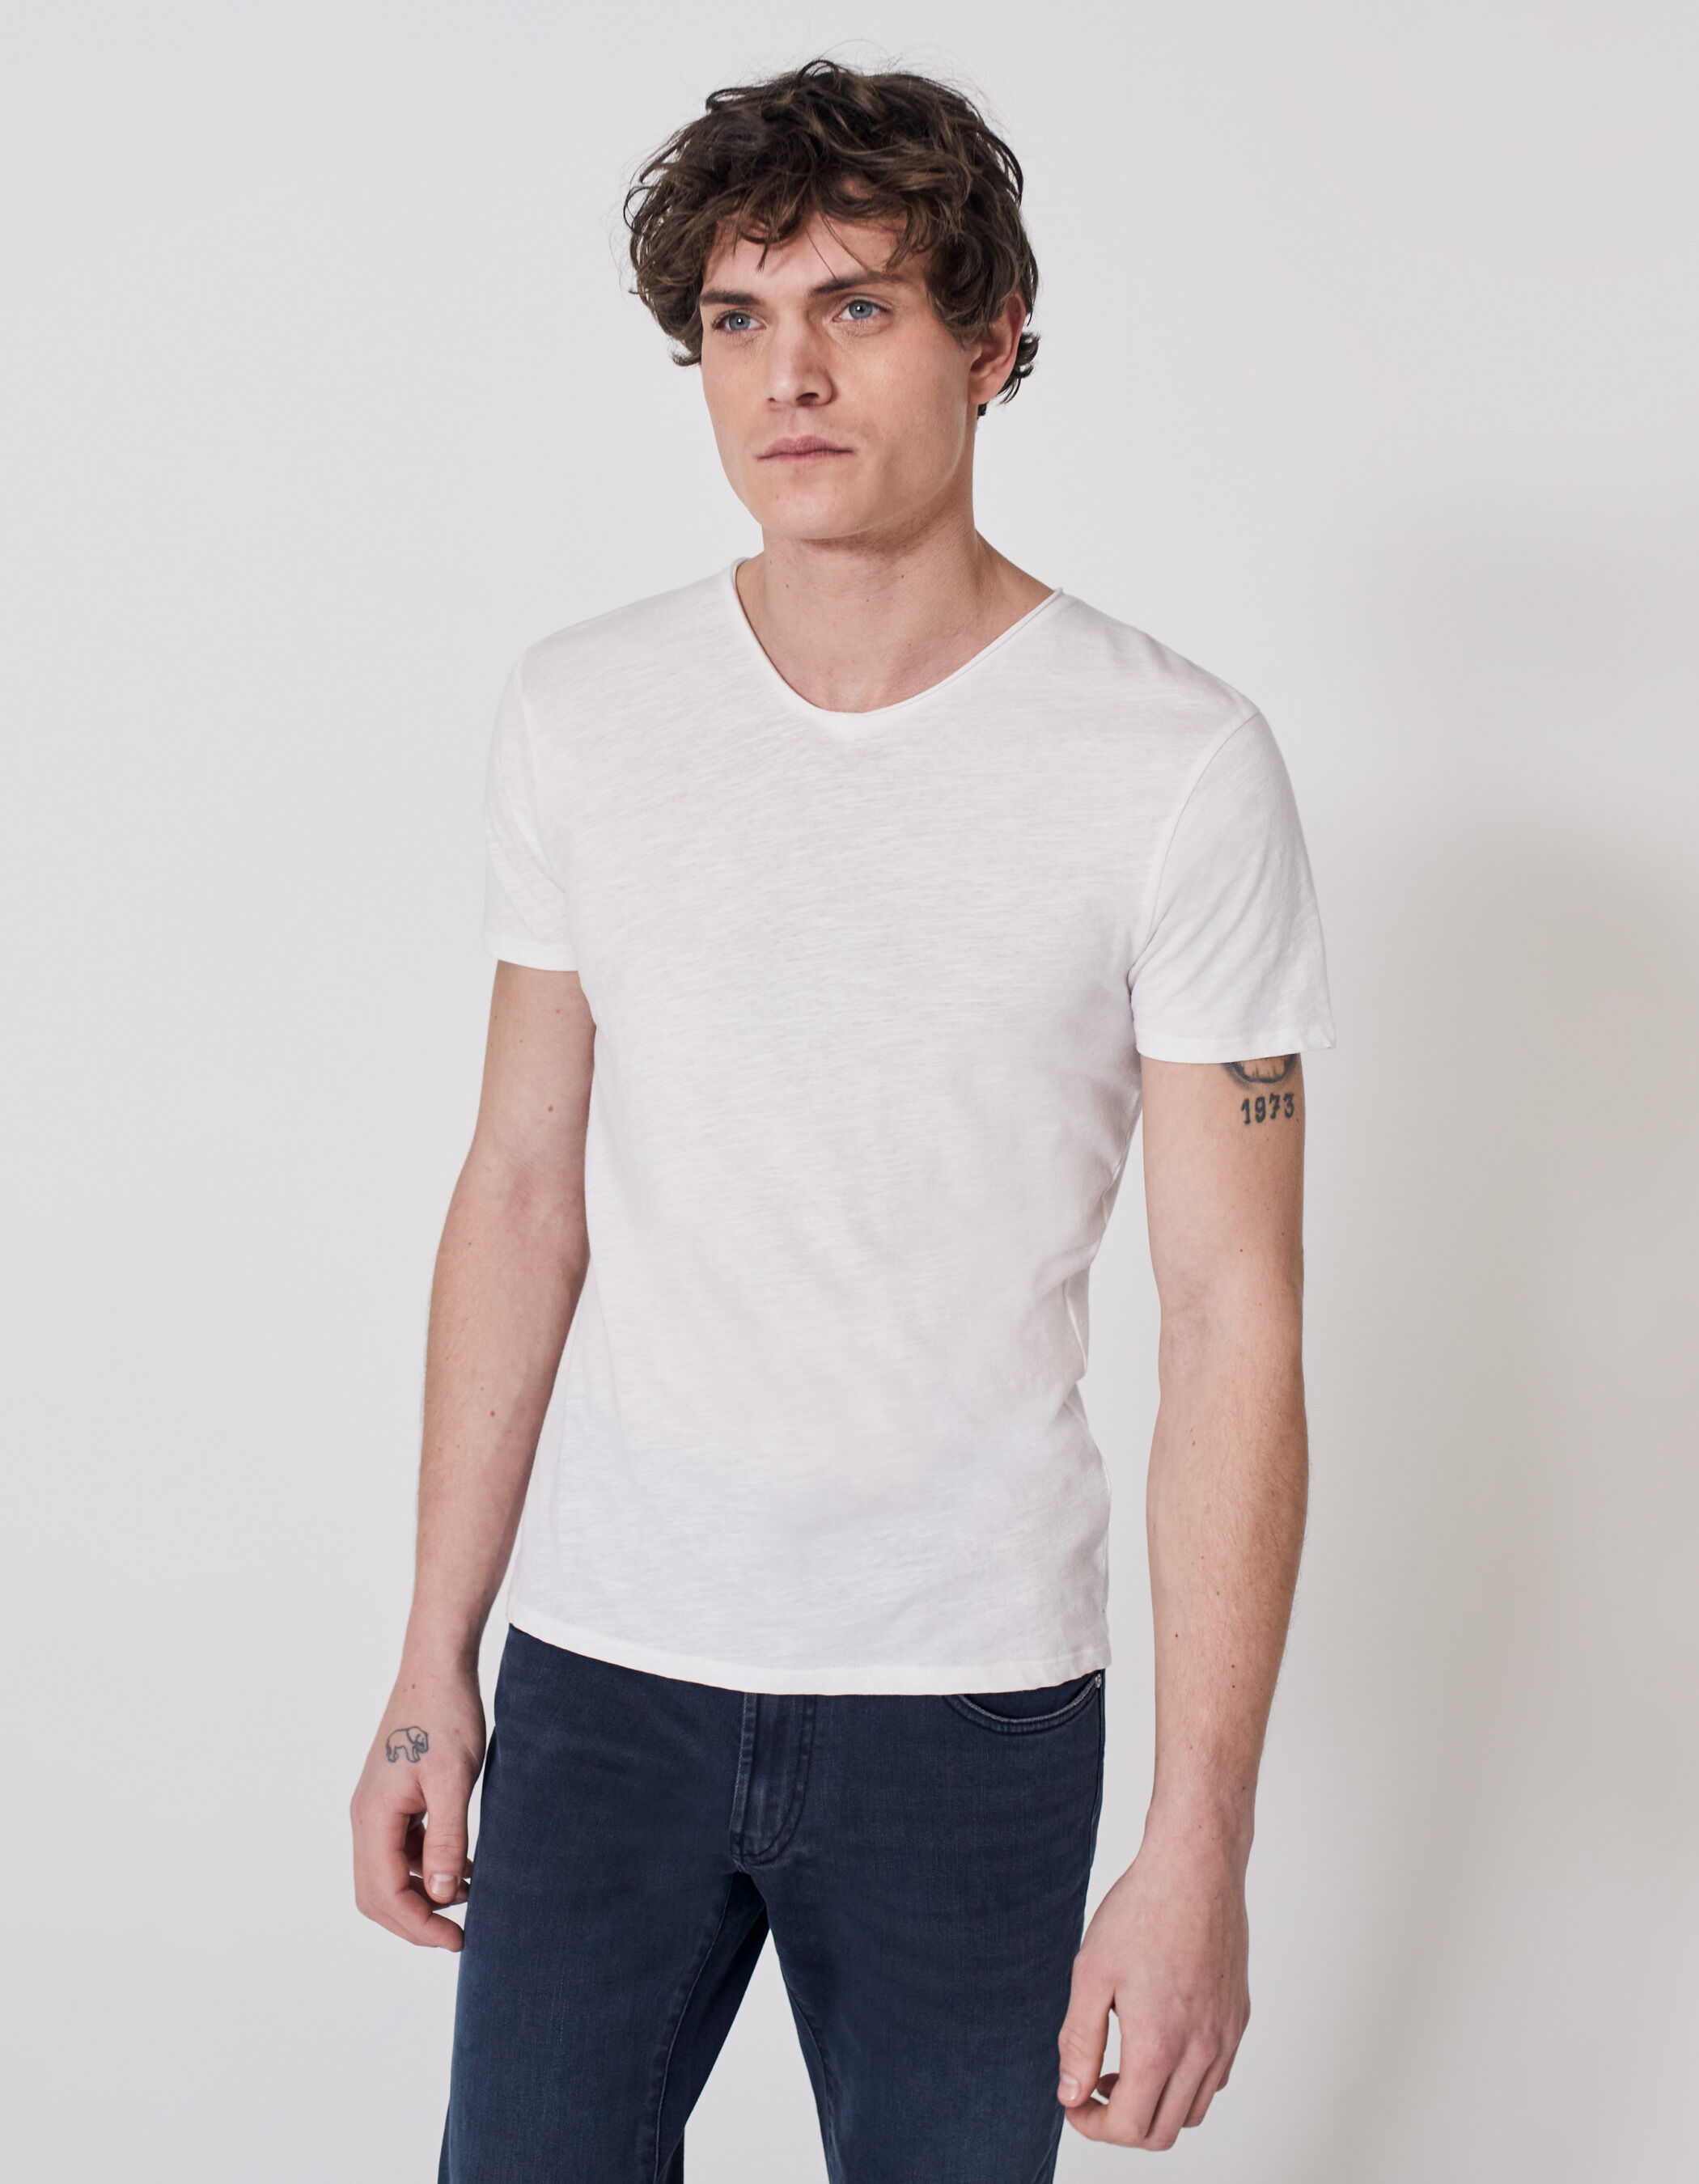 Weiß S DAMEN Hemden & T-Shirts Rüschen Rabatt 58 % NoName T-Shirt 